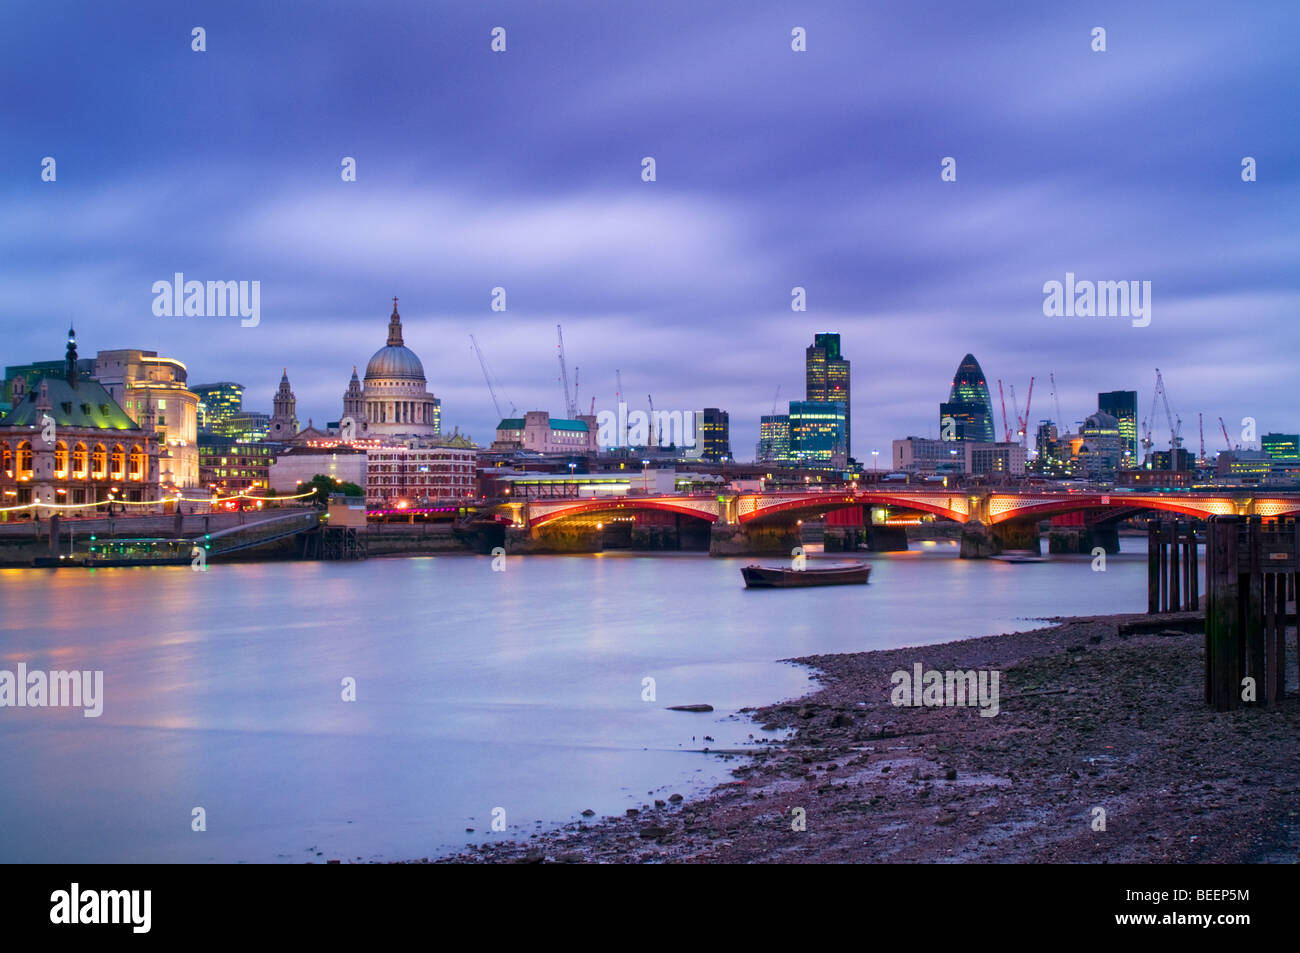 London's skyline at dusk, UK Stock Photo